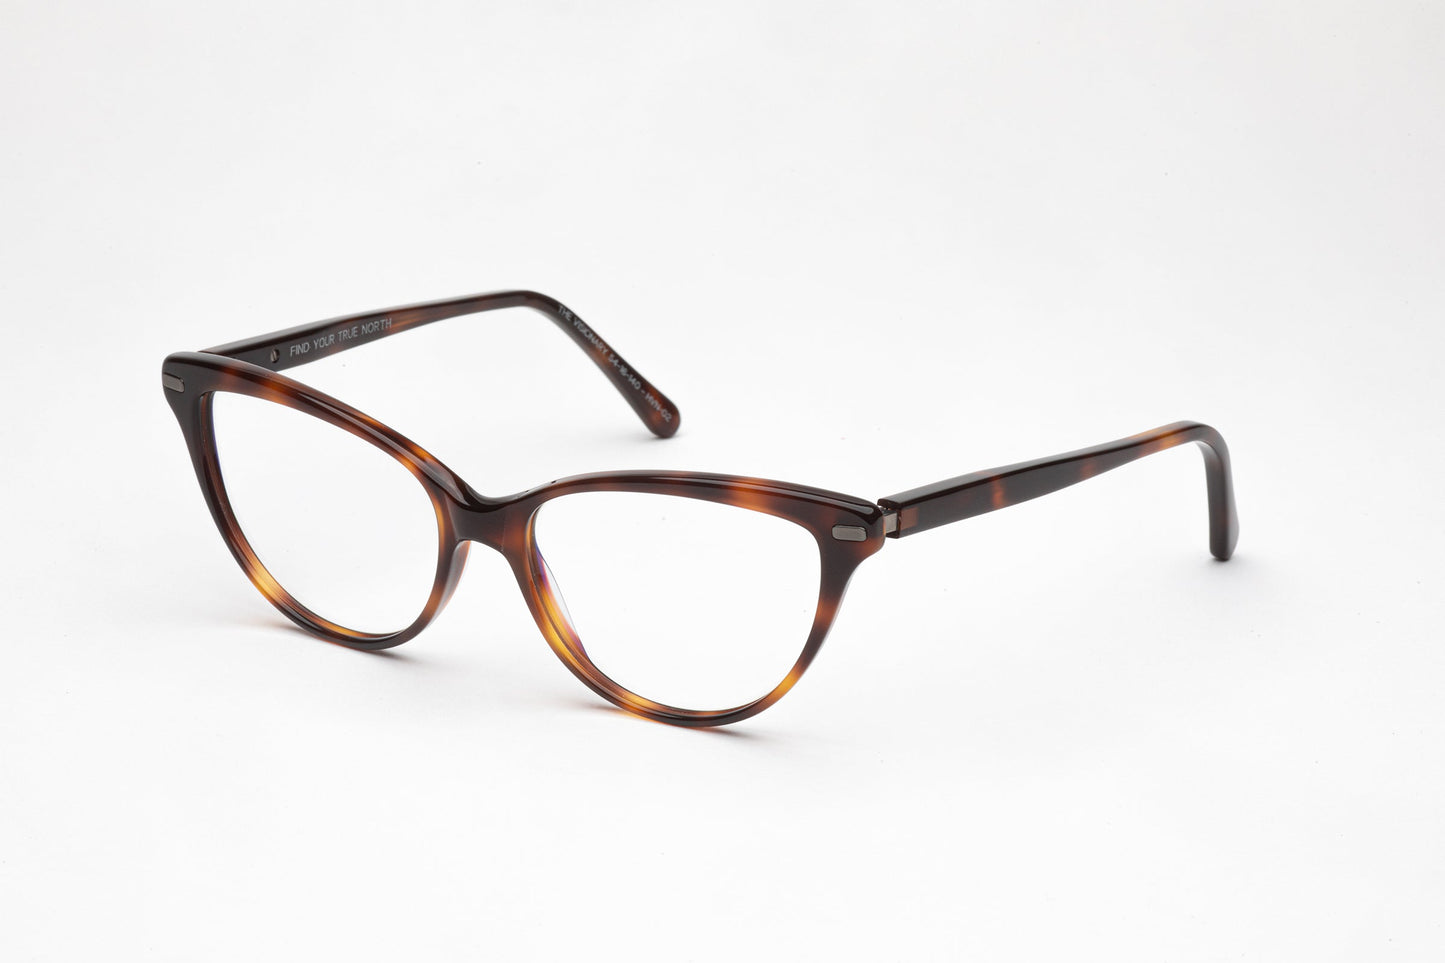 Angled View - The Visionary 3 | Premium Acetate Frames – Designer Prescription Glasses  -  Tortoiseshell